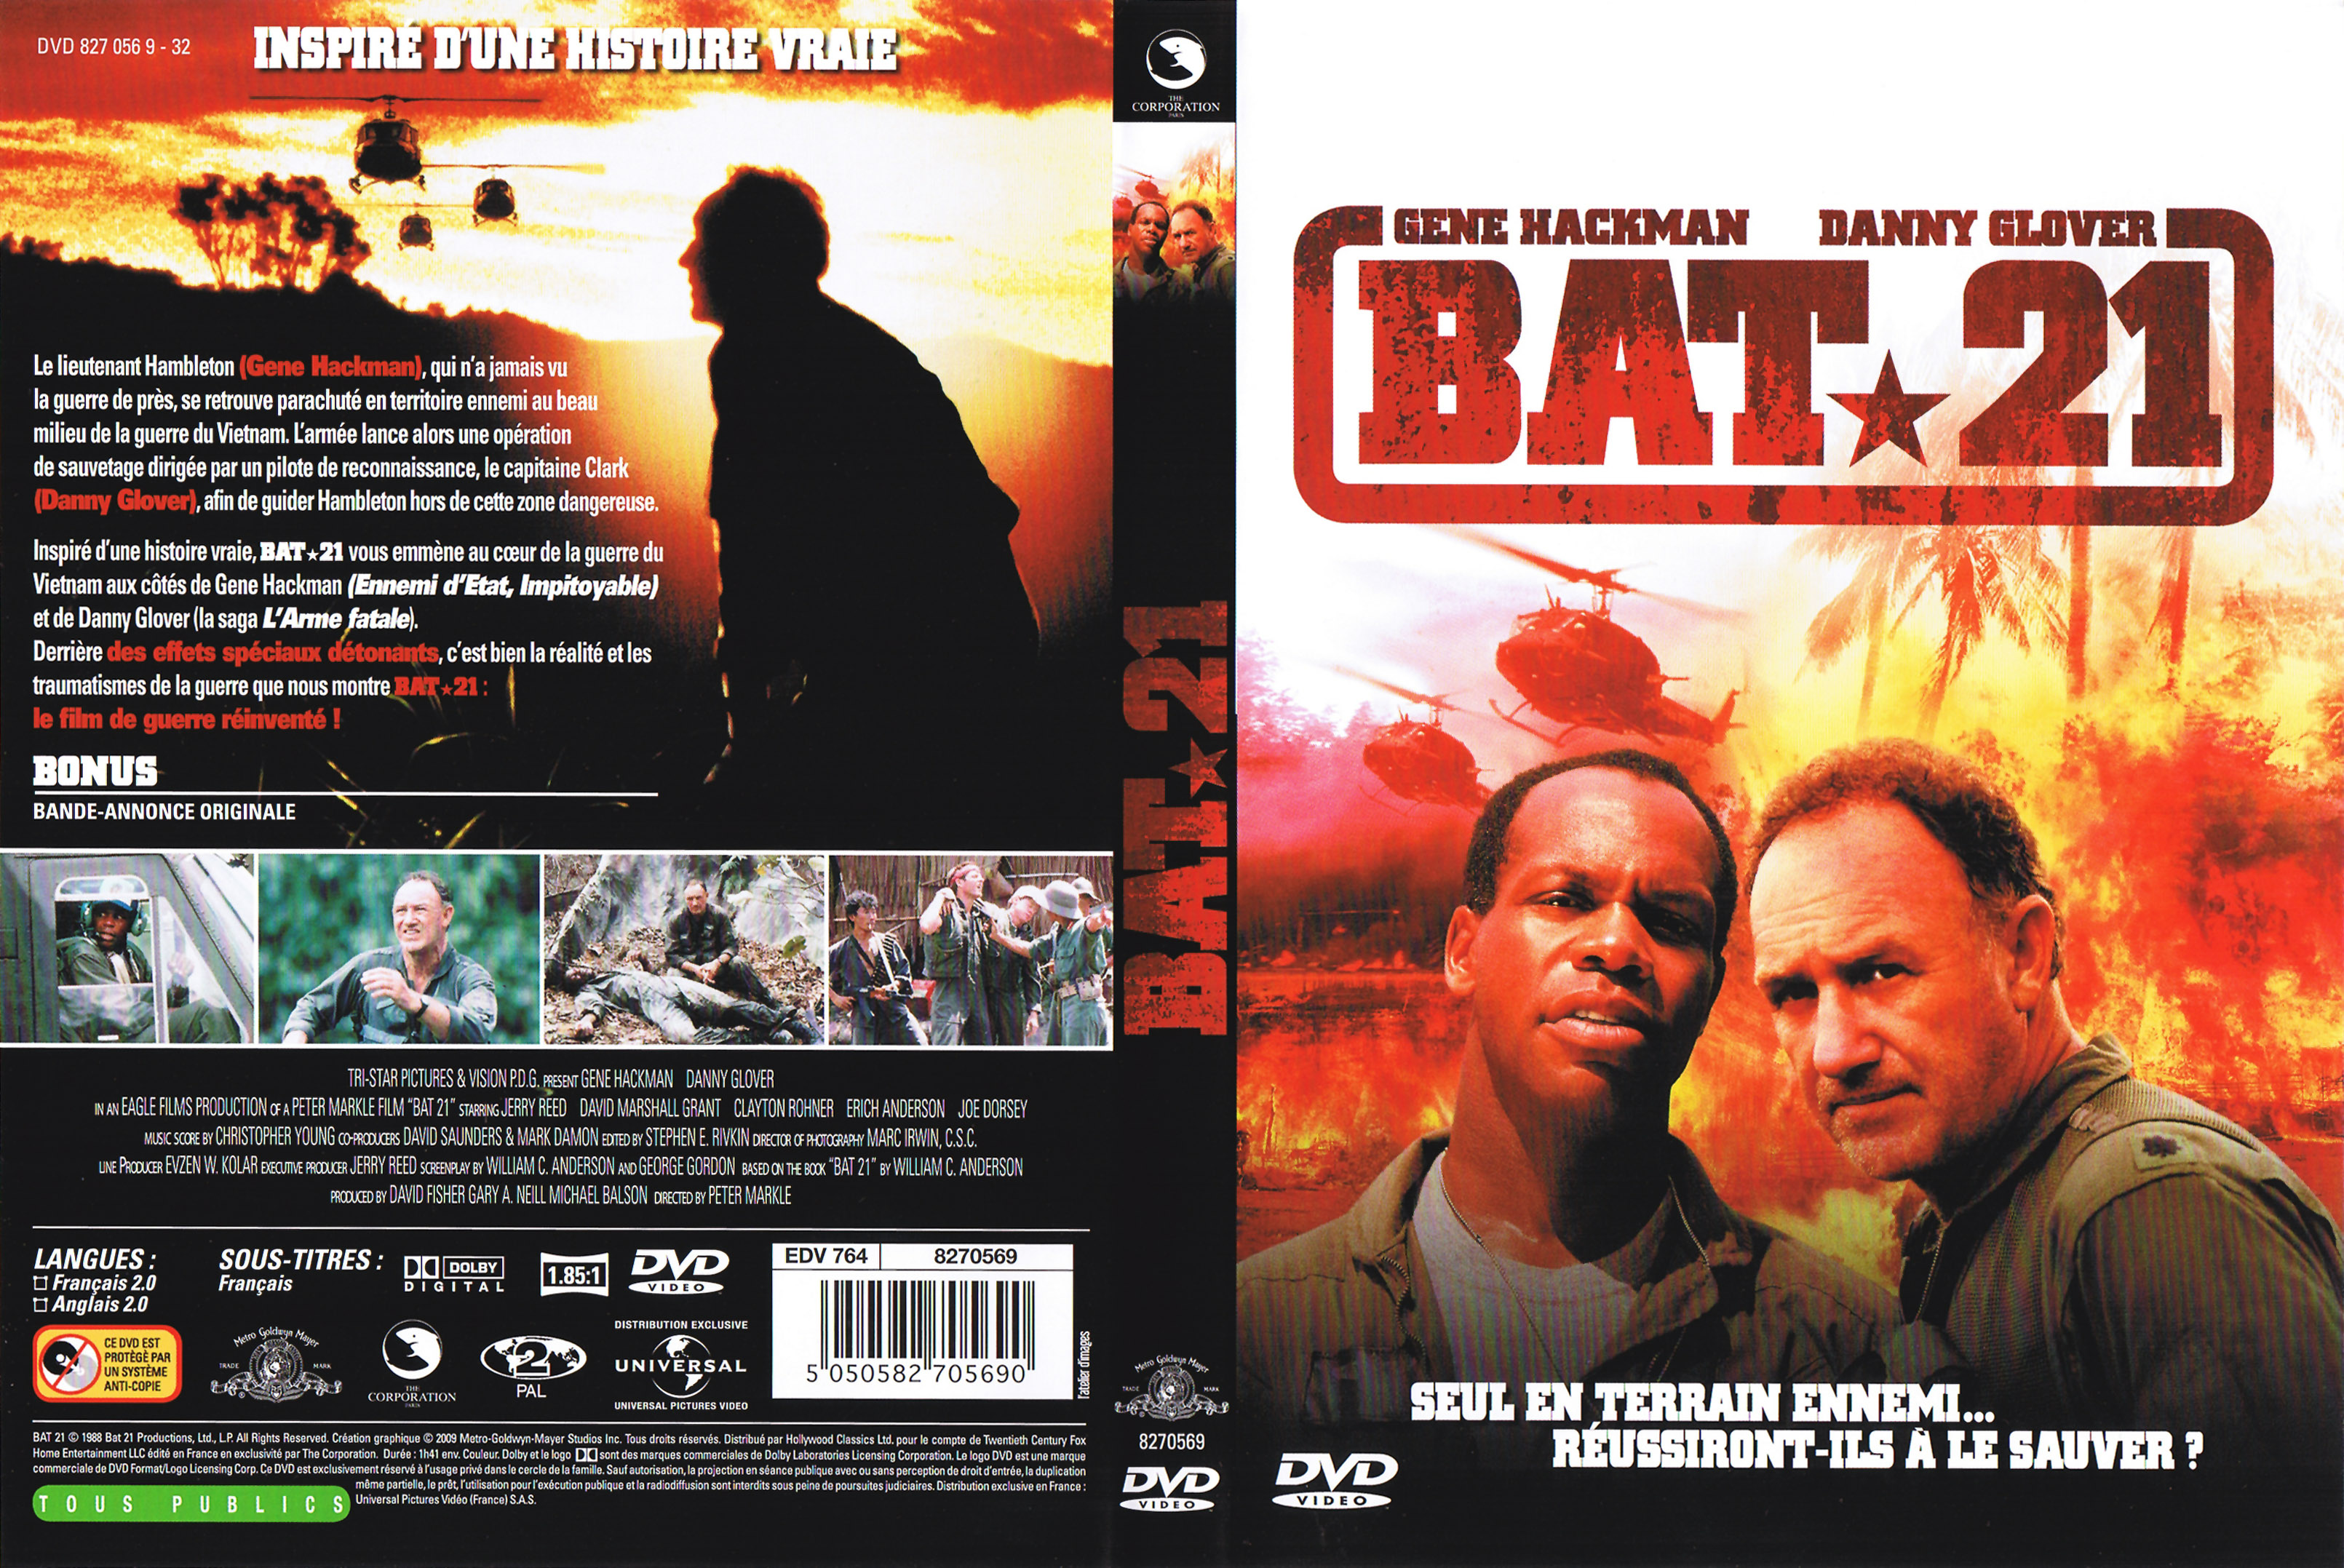 Jaquette DVD Bat 21